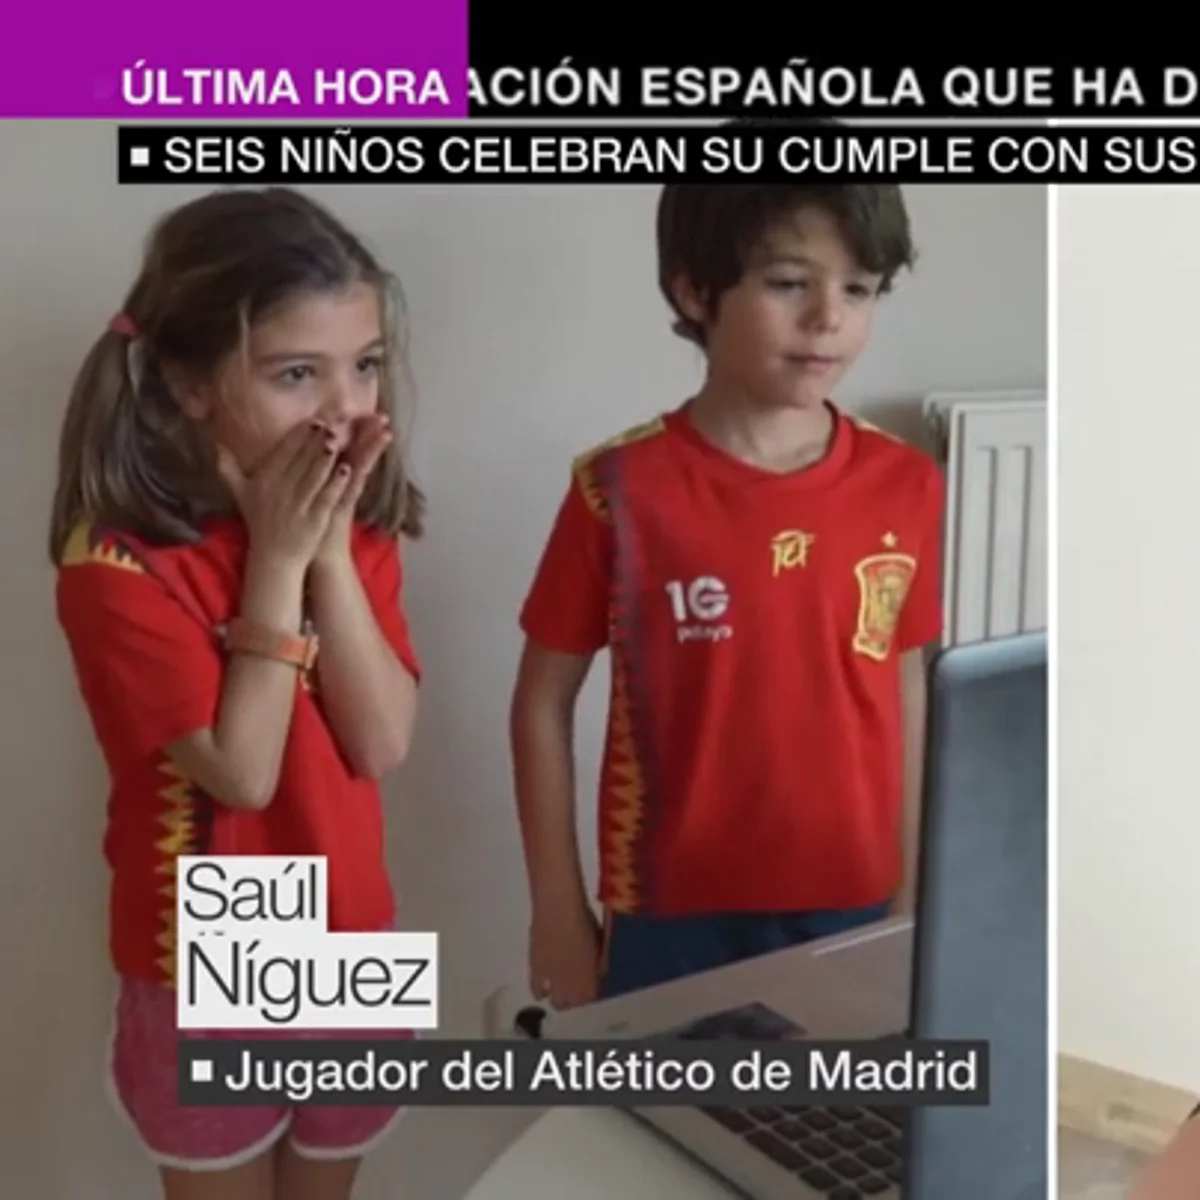 Los jugadores de la selección española felicitan el cumpleaños a niños  confinados durante el coronavirus